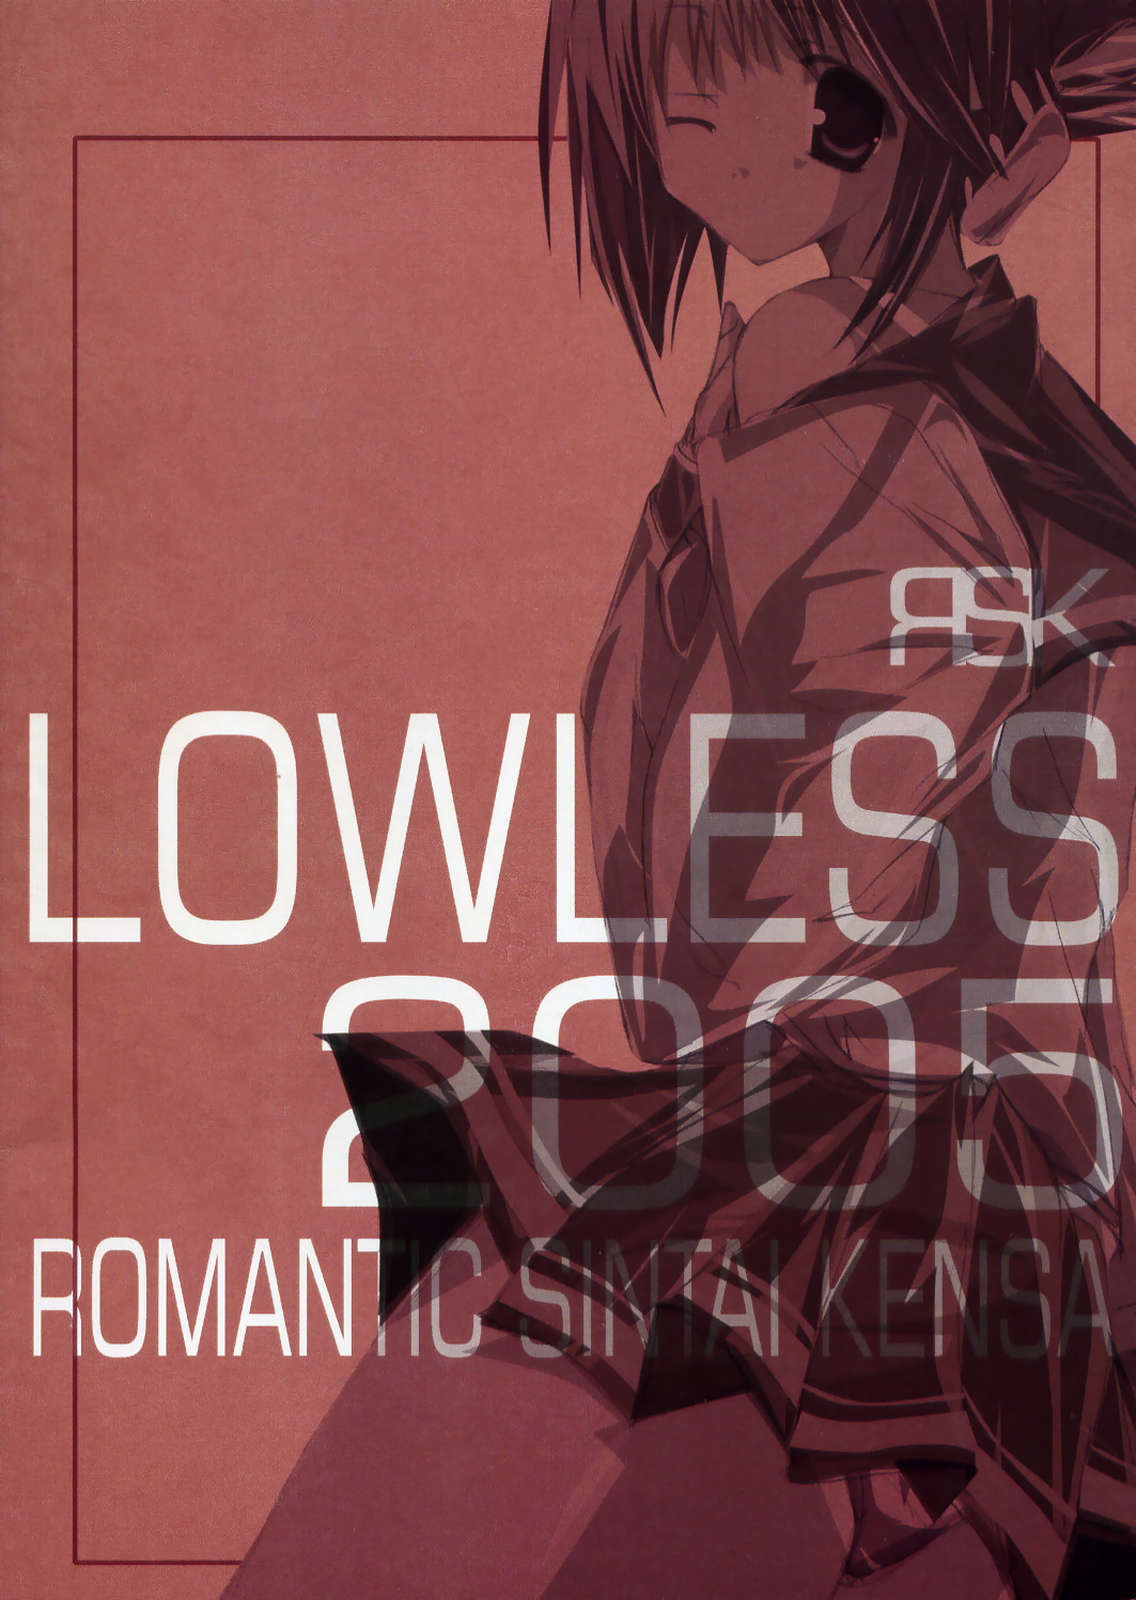 [Romantic Sintai-Kensa. (Nakamura B-ta)] LOW LESS (ToHeart 2) [ロマンティック身体検査。 (中村べーた)] LOWLESS (トゥハート2)